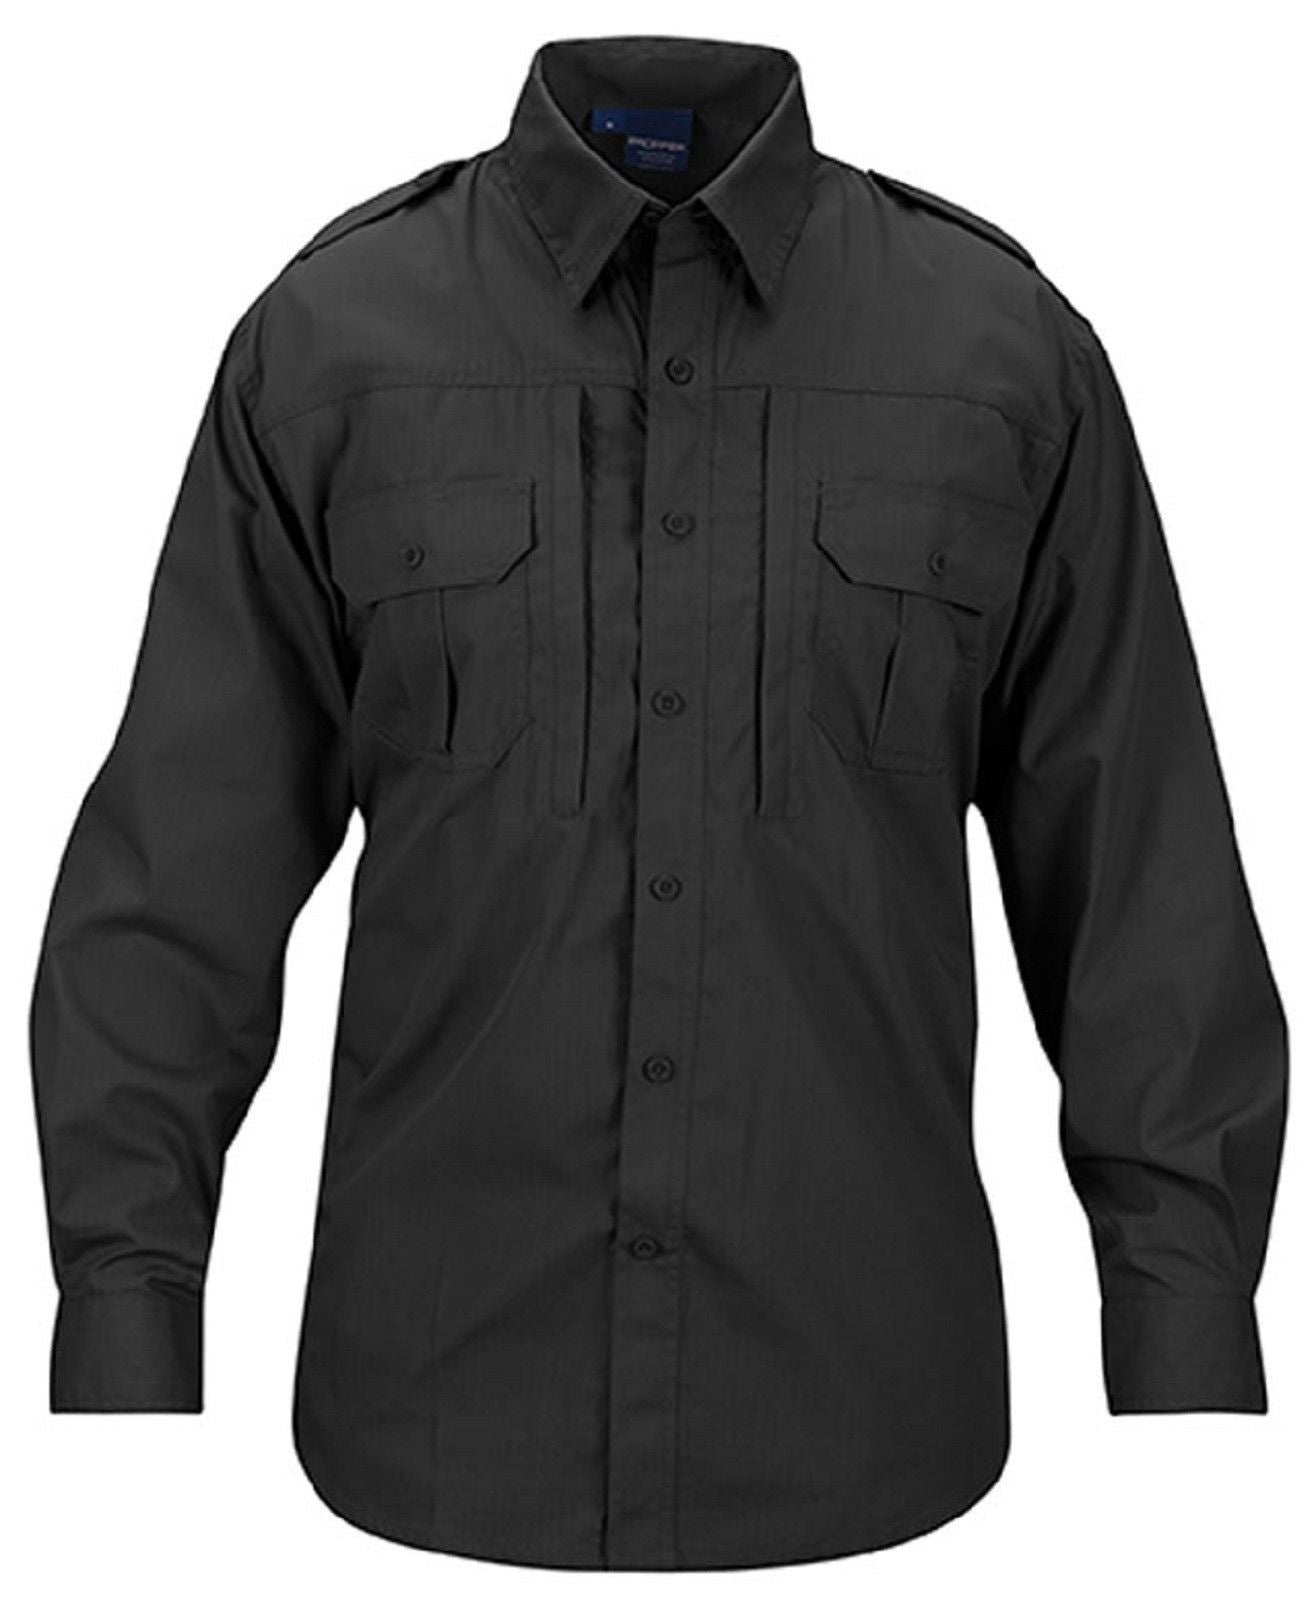 Propper Lightweight Tactical Shirt - Men's Long Sleeve Button Up ...